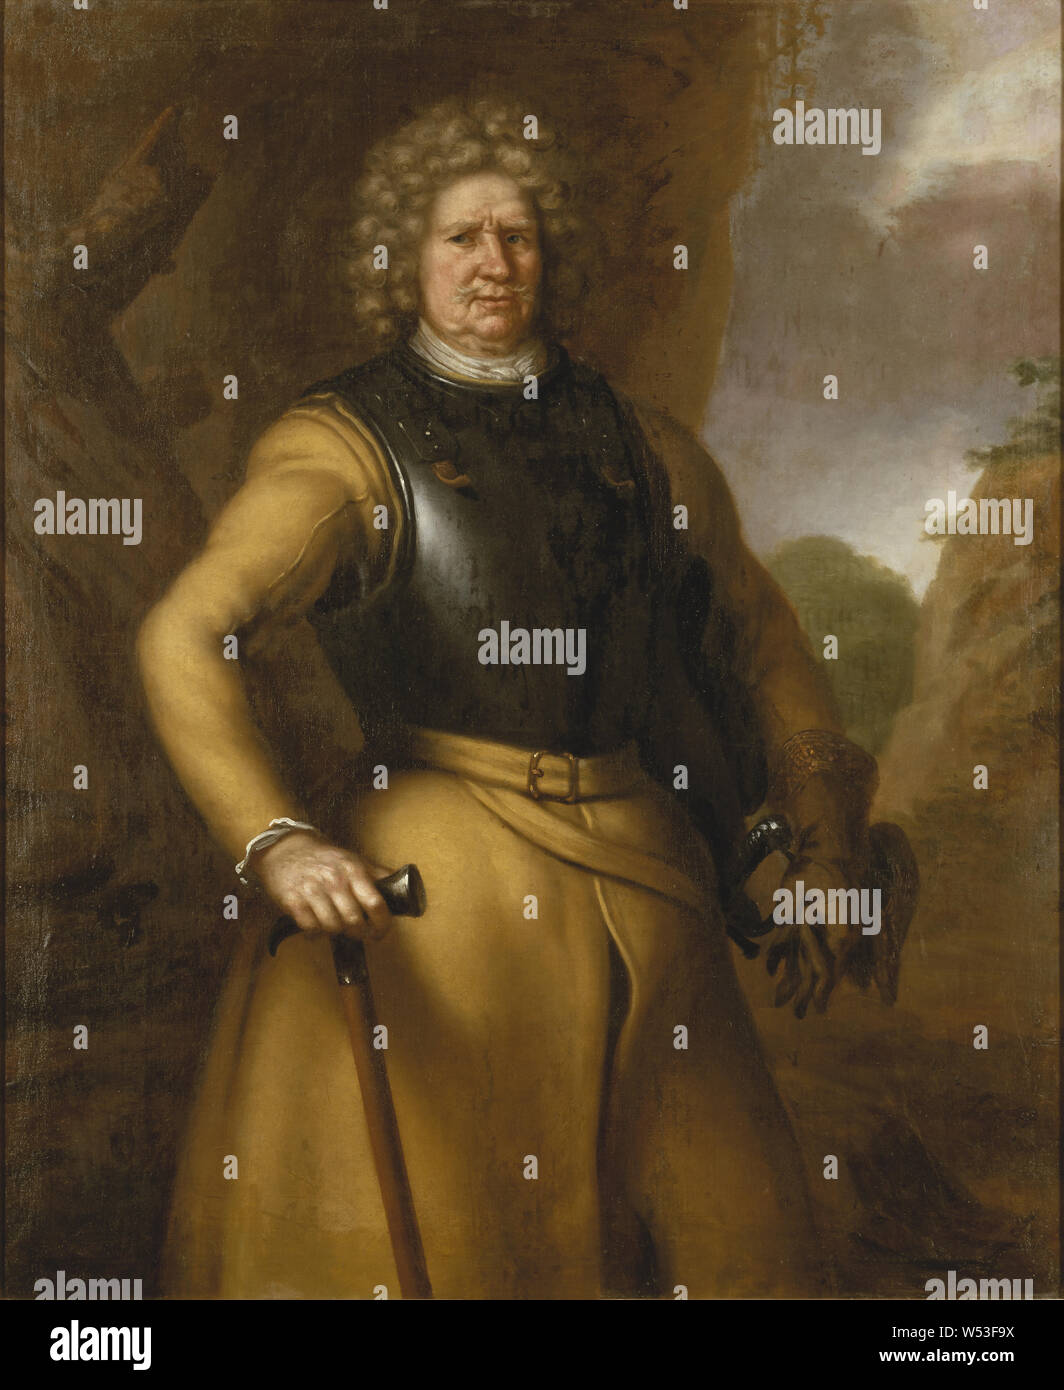 David Klöcker Ehrenstrahl zugeschrieben, Pro Jönsson Stålhammar, Malerei, Portrait, Pro Stålhammar, 1692, Öl auf Leinwand, Höhe 144 cm (56,6 Zoll), Breite 119 cm (46,8 Zoll), unterzeichnet, D, d Klöcker Ehrenstrahl fecit A, o 1692 Stockfoto